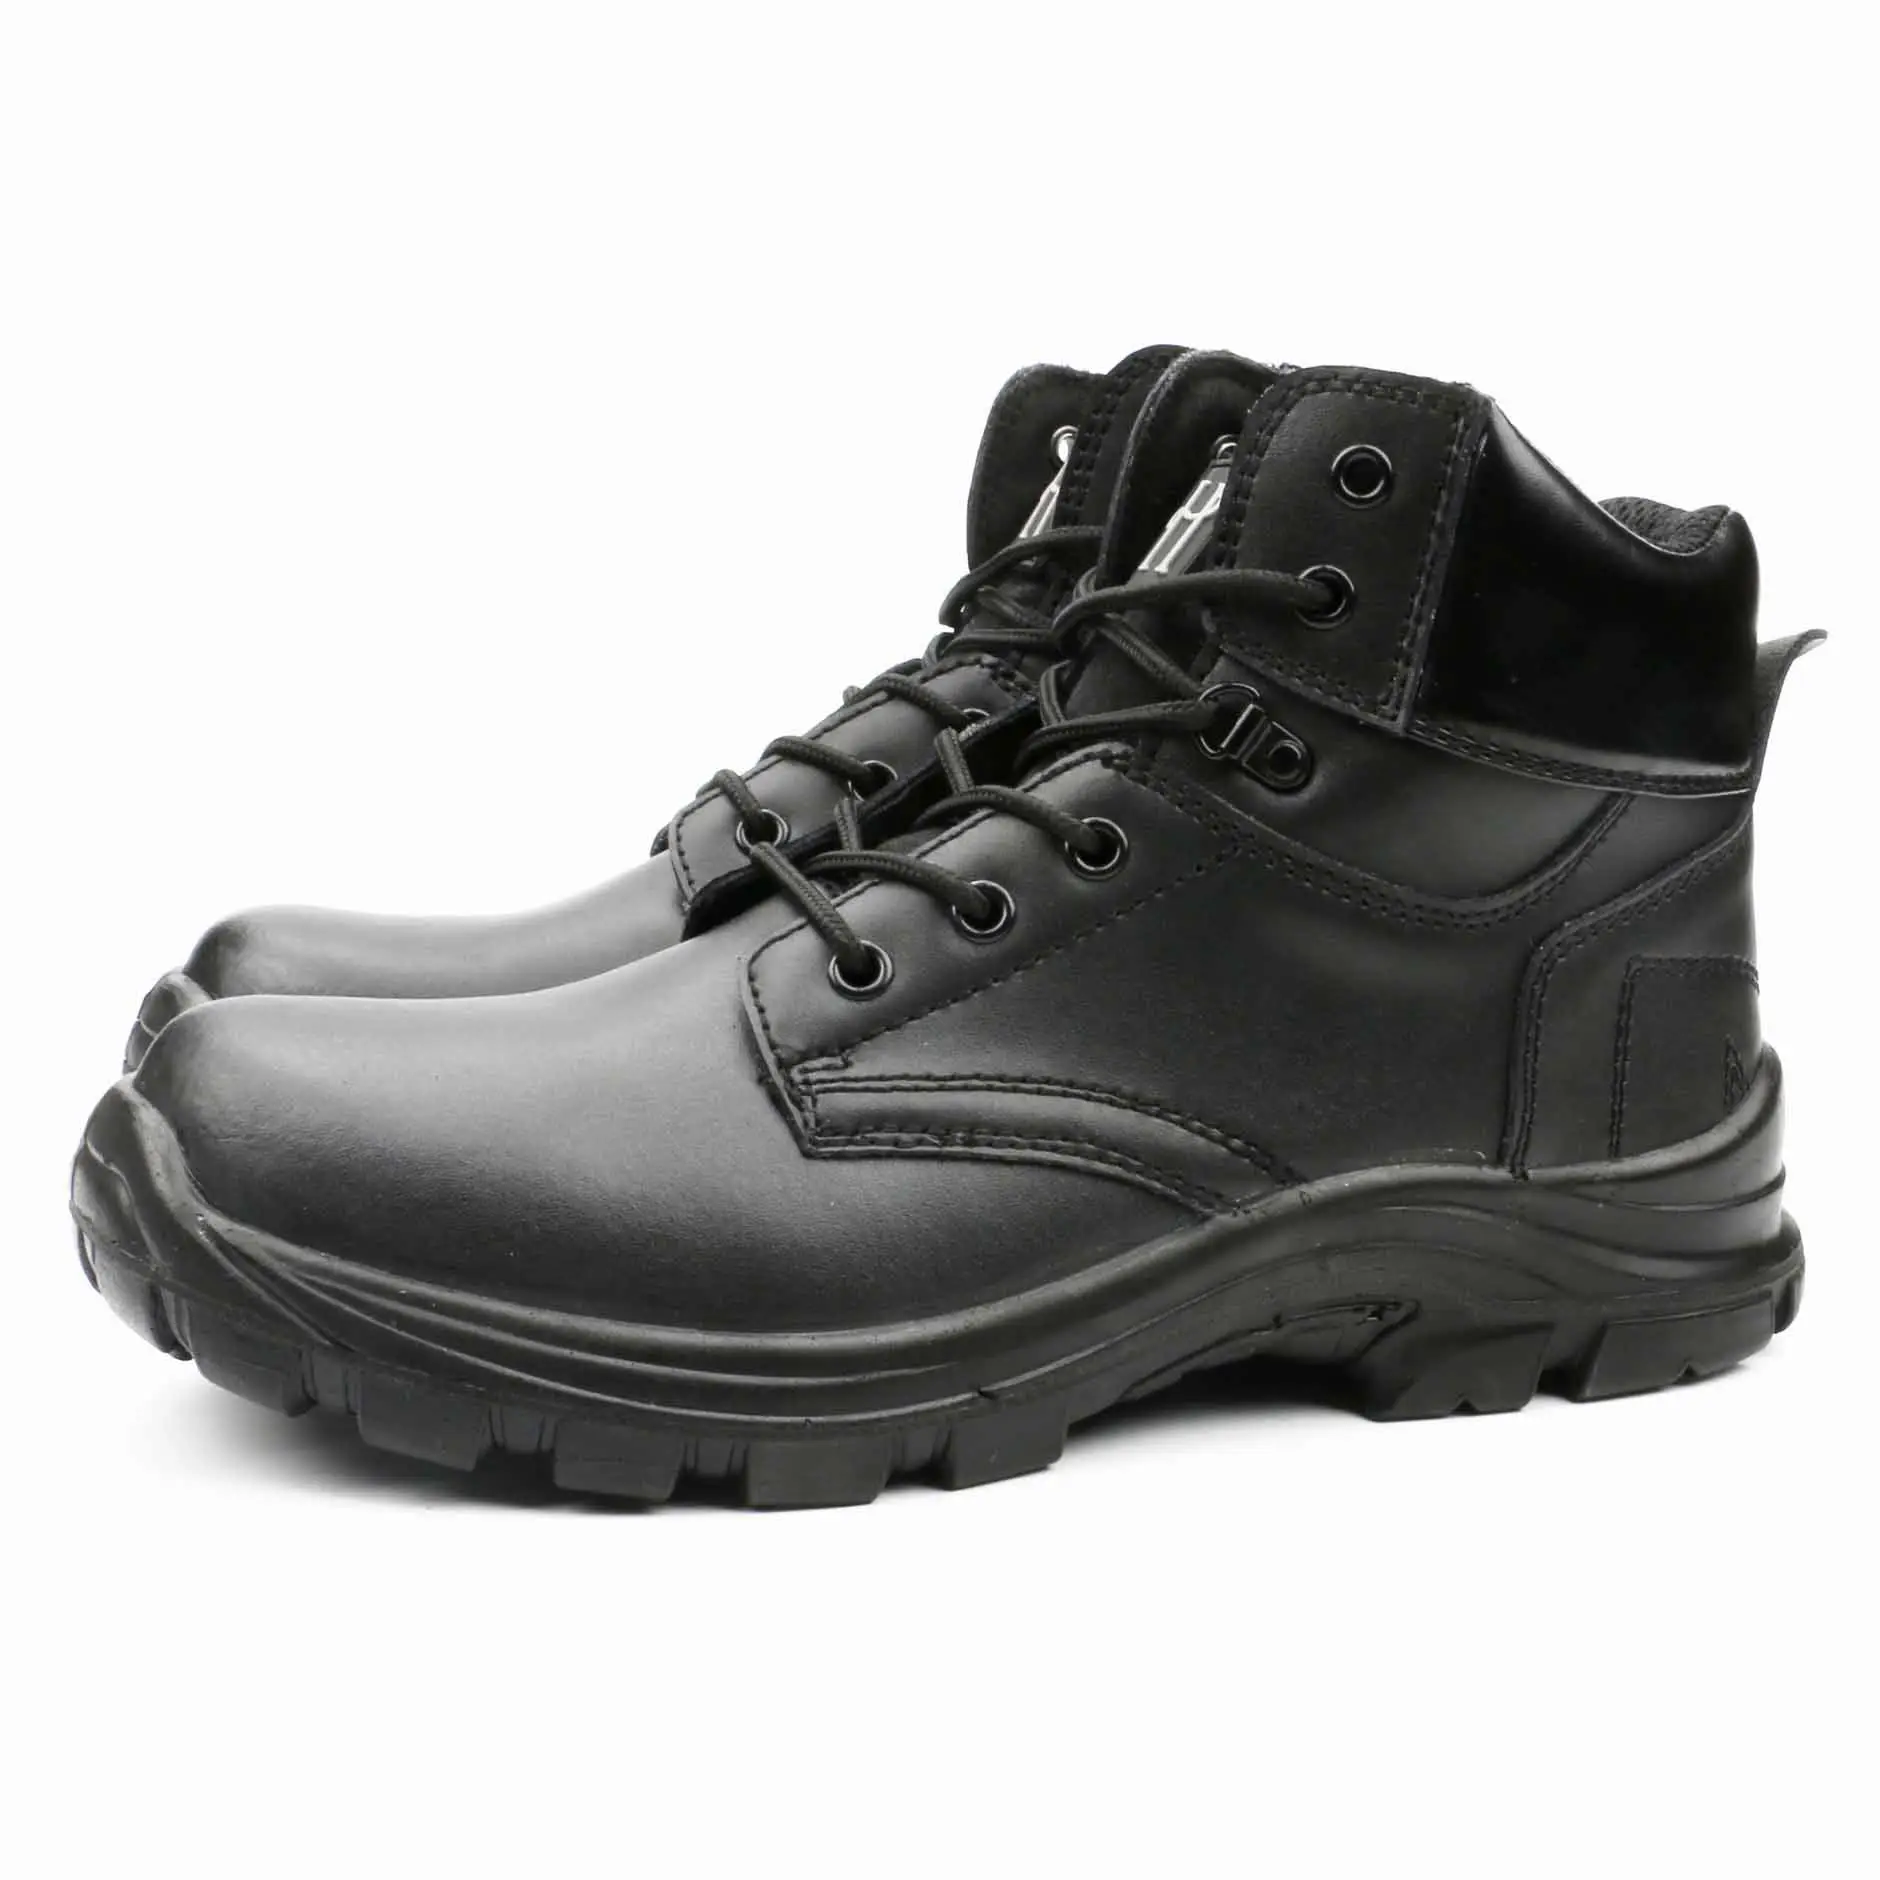 Fd6209 guapo flyton impermeable zapatillas de punta de acero aislado de alta calidad, de alta calidad de corte negro impermeable zapatos de seguridad con genuino